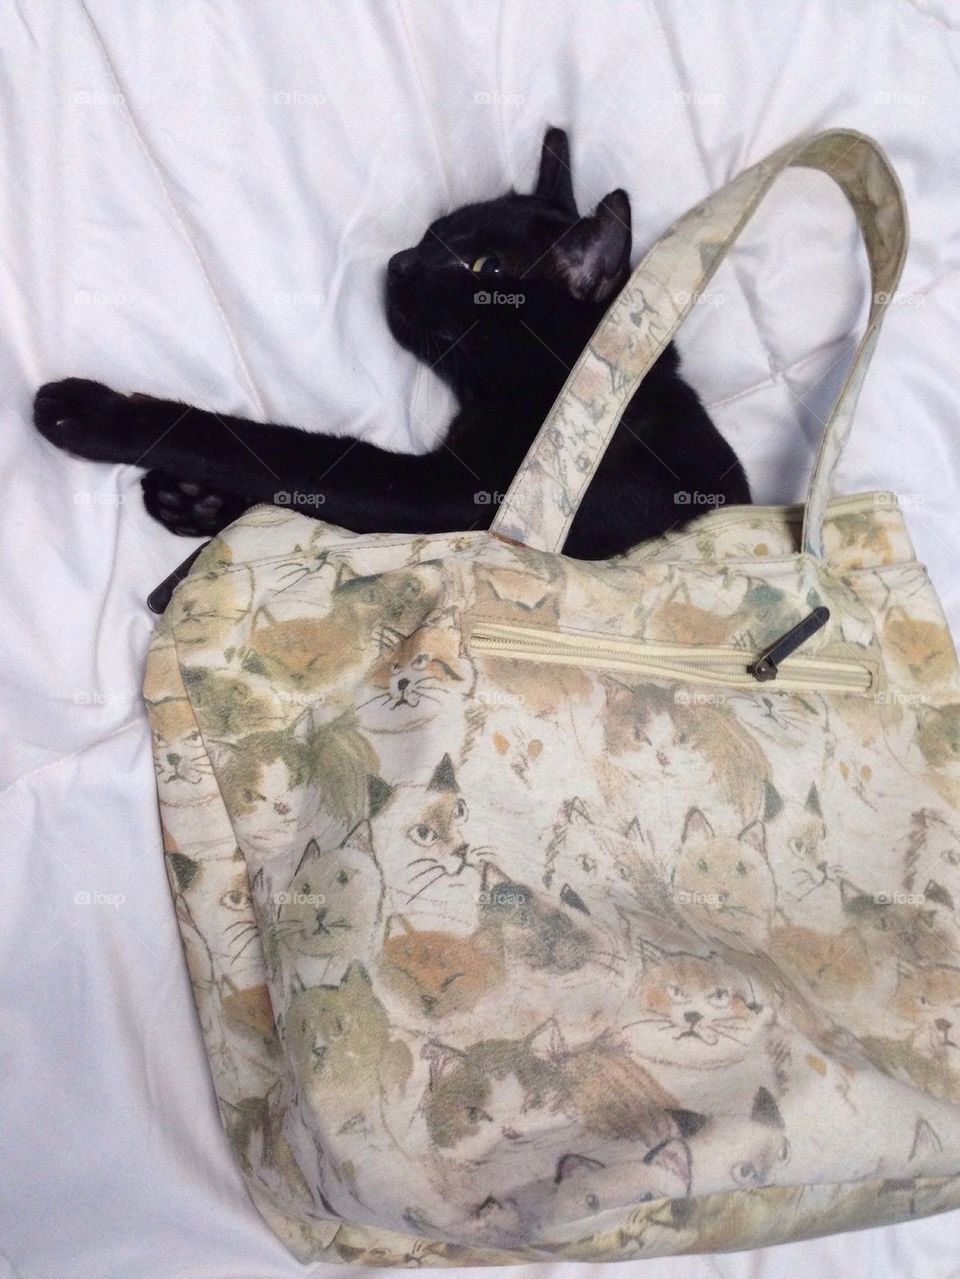 Black cat In the bag’s socialcat